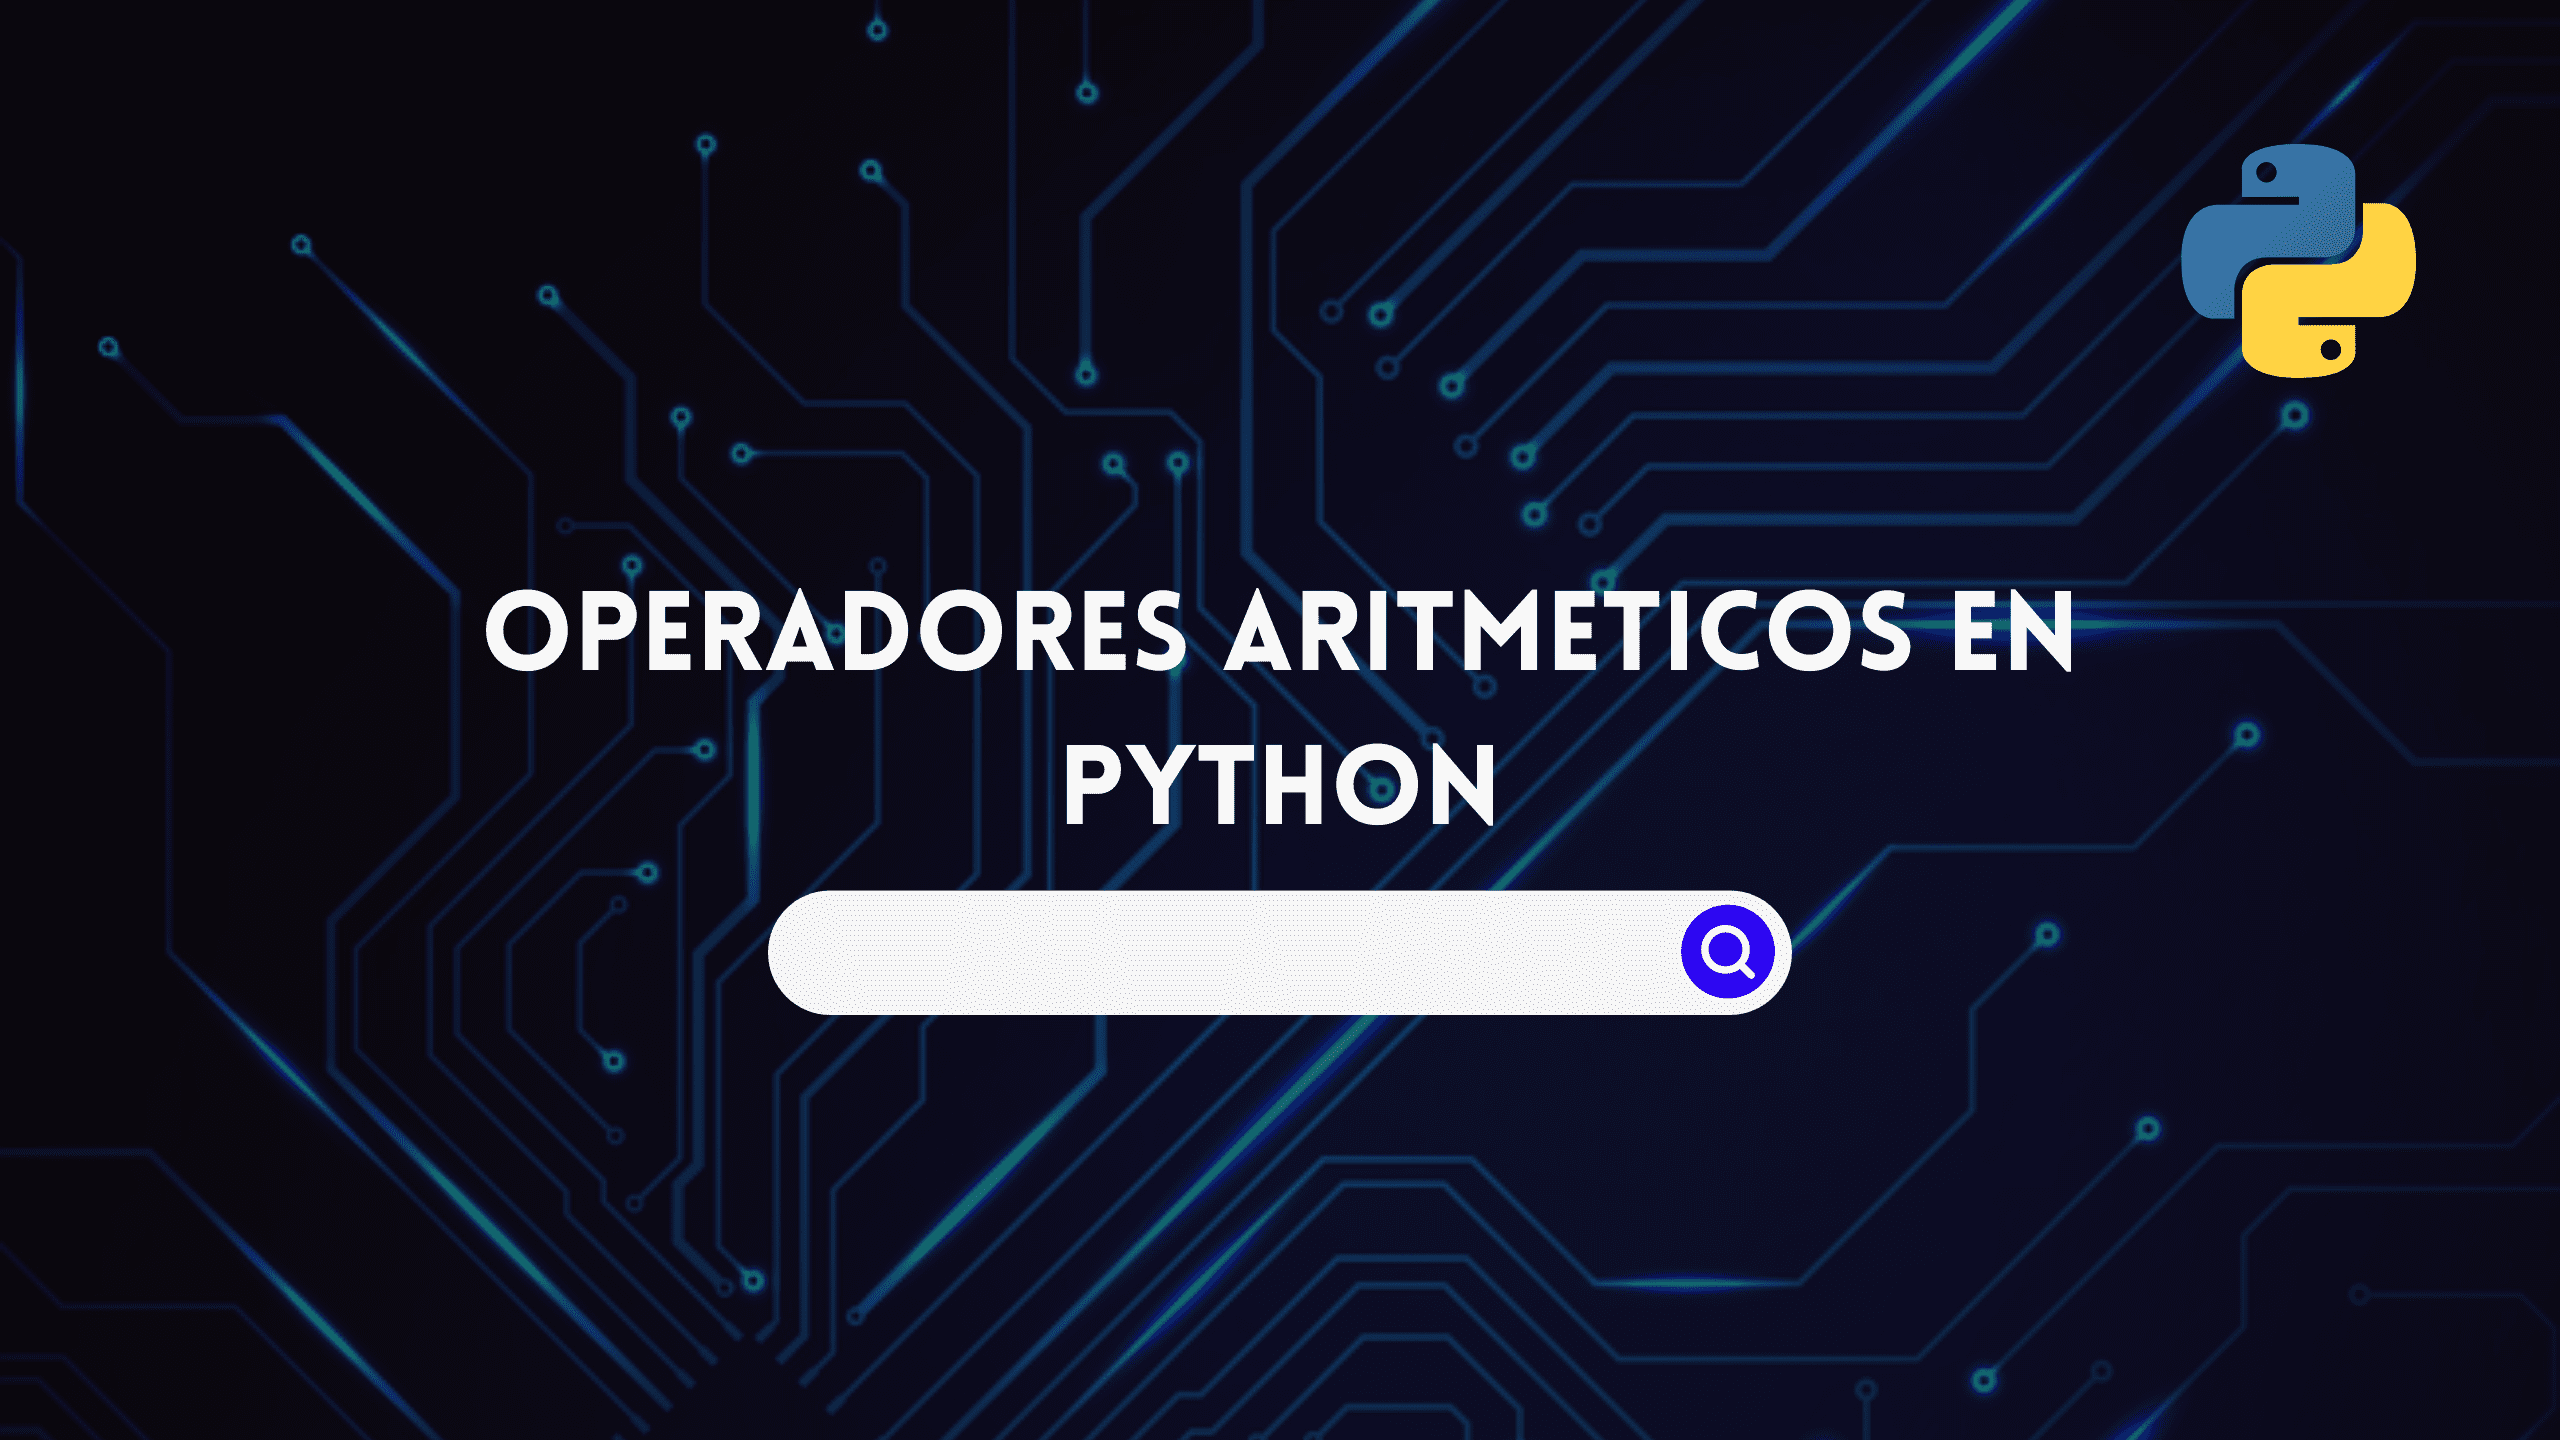 Operadores Aritmeticos en Python